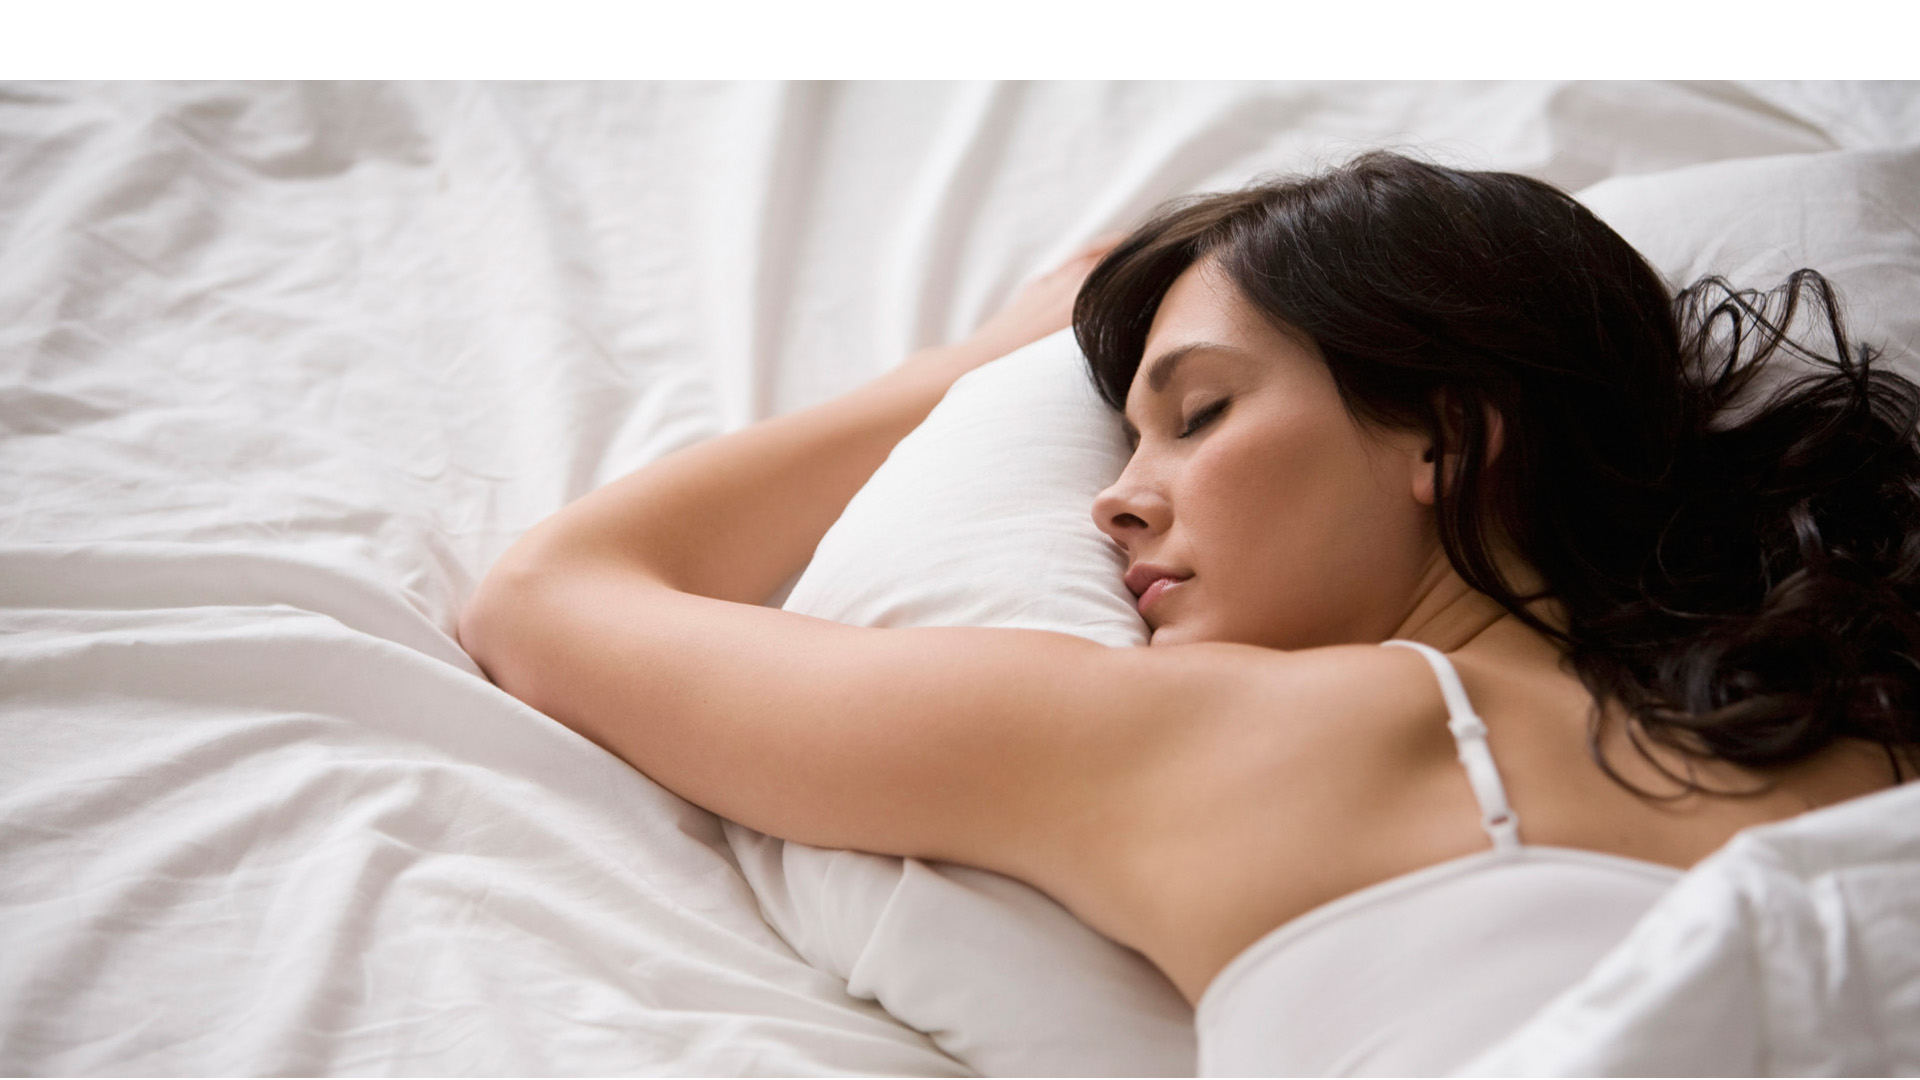 Unos sencillos ejercicios y hábitos pueden ayudarte a dormir sin recurrir a medicamentos